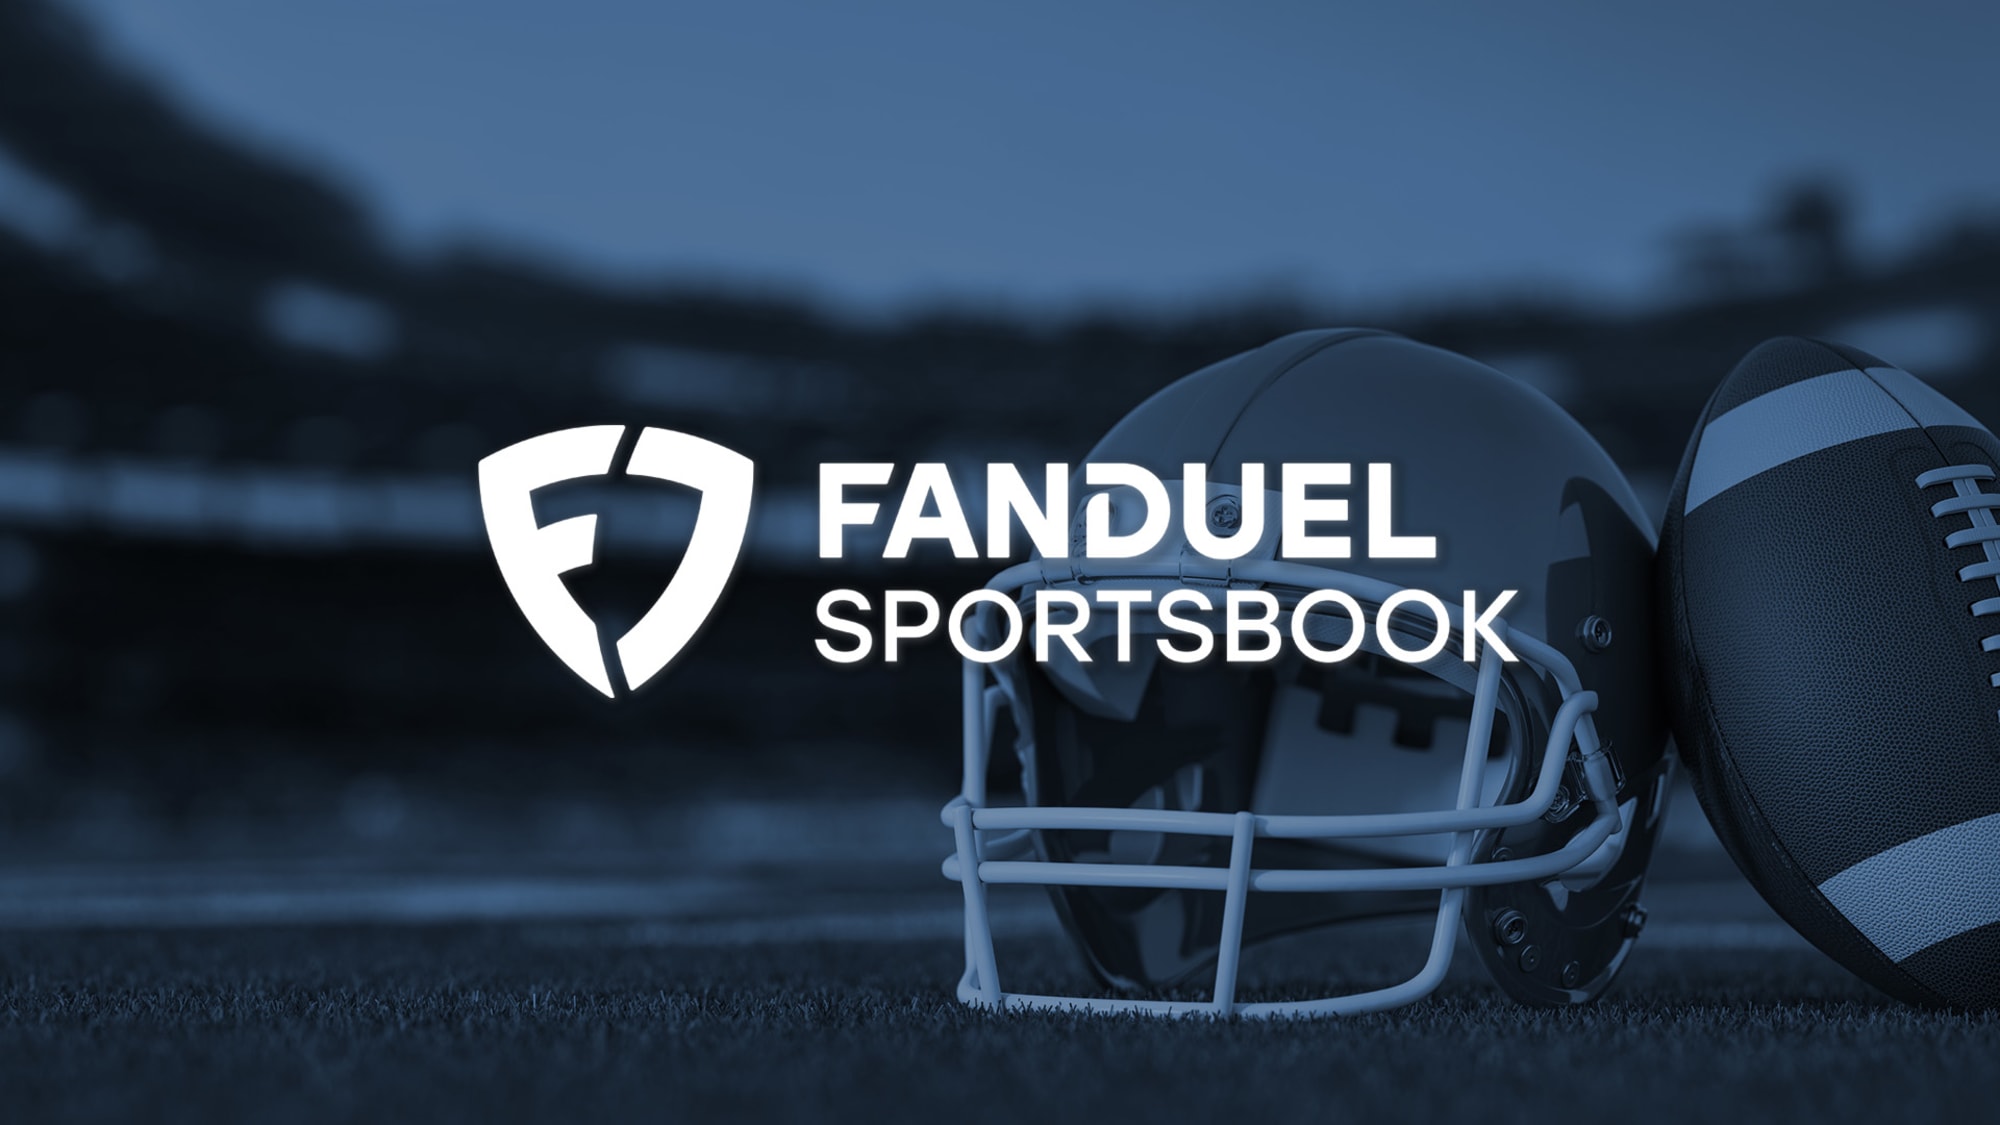 FanDuel NFL Sunday Ticket promo: Get $100 discount, $200 in bonus bets